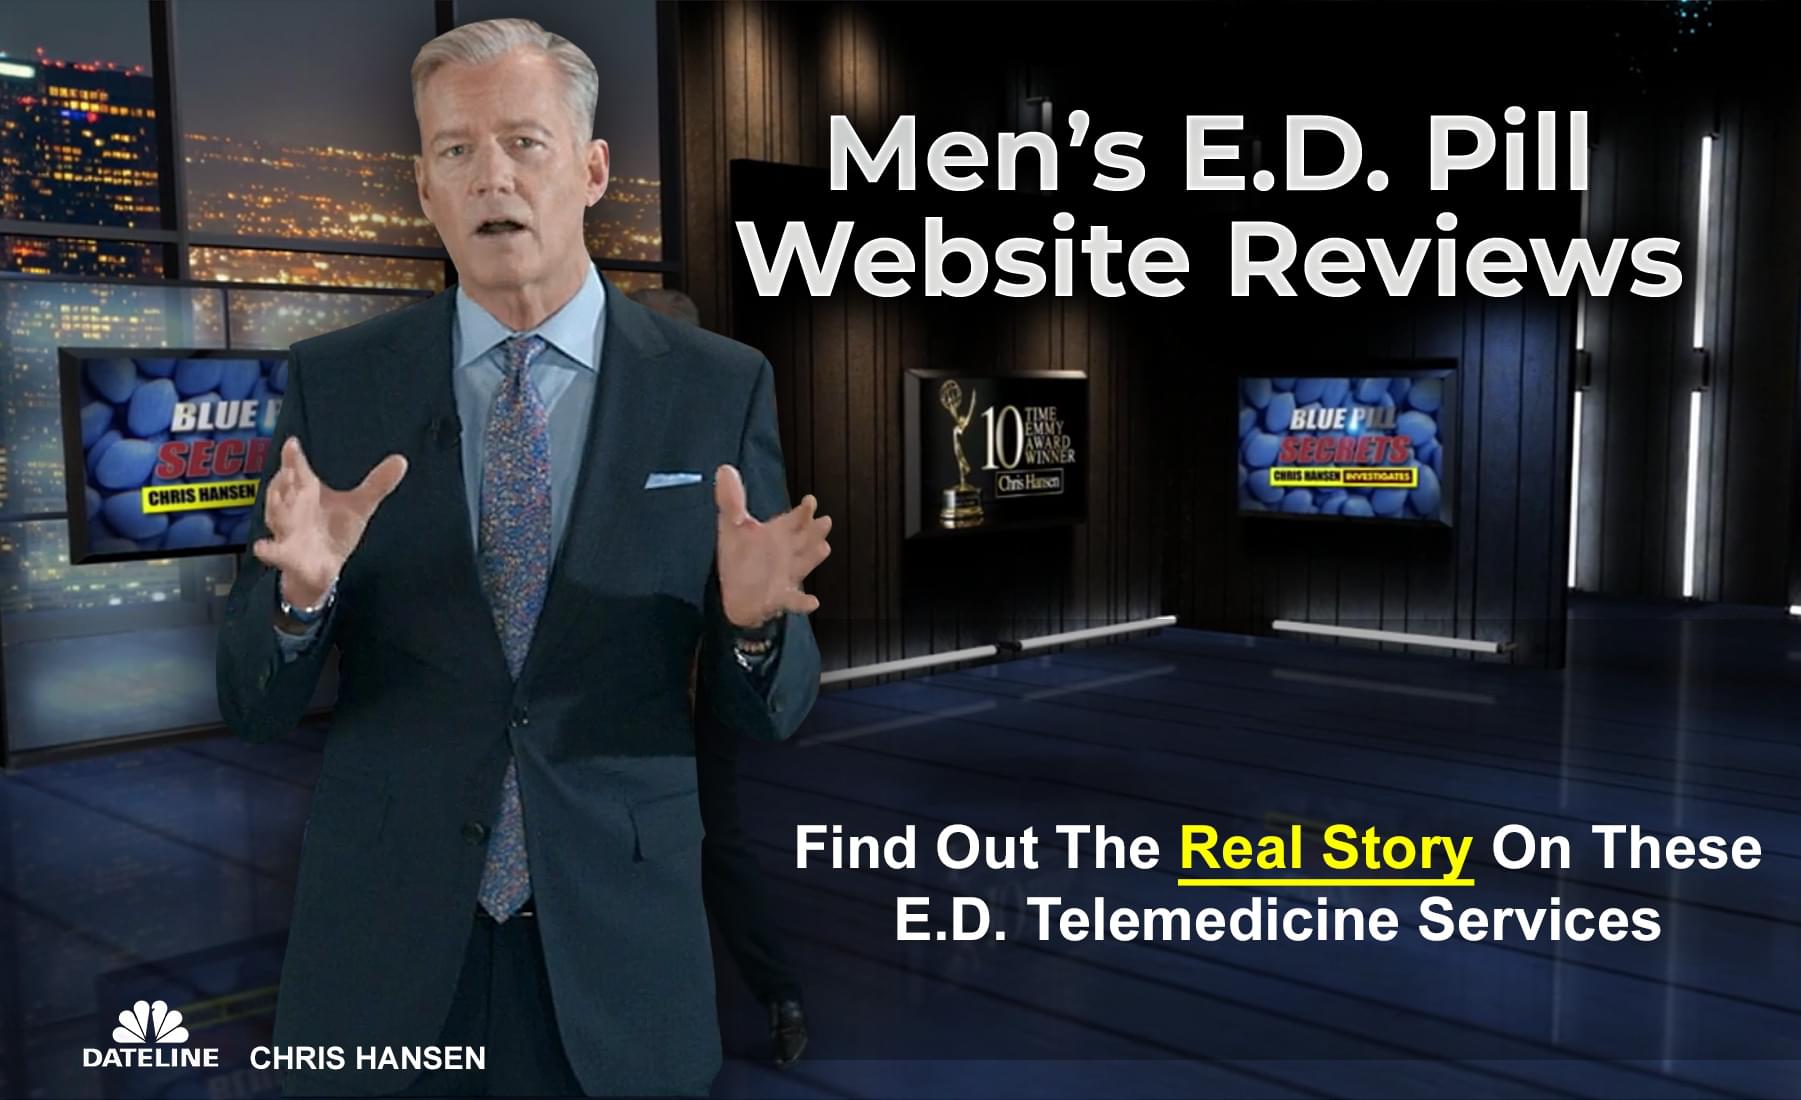 Men's E.D. Pill Website Reviews